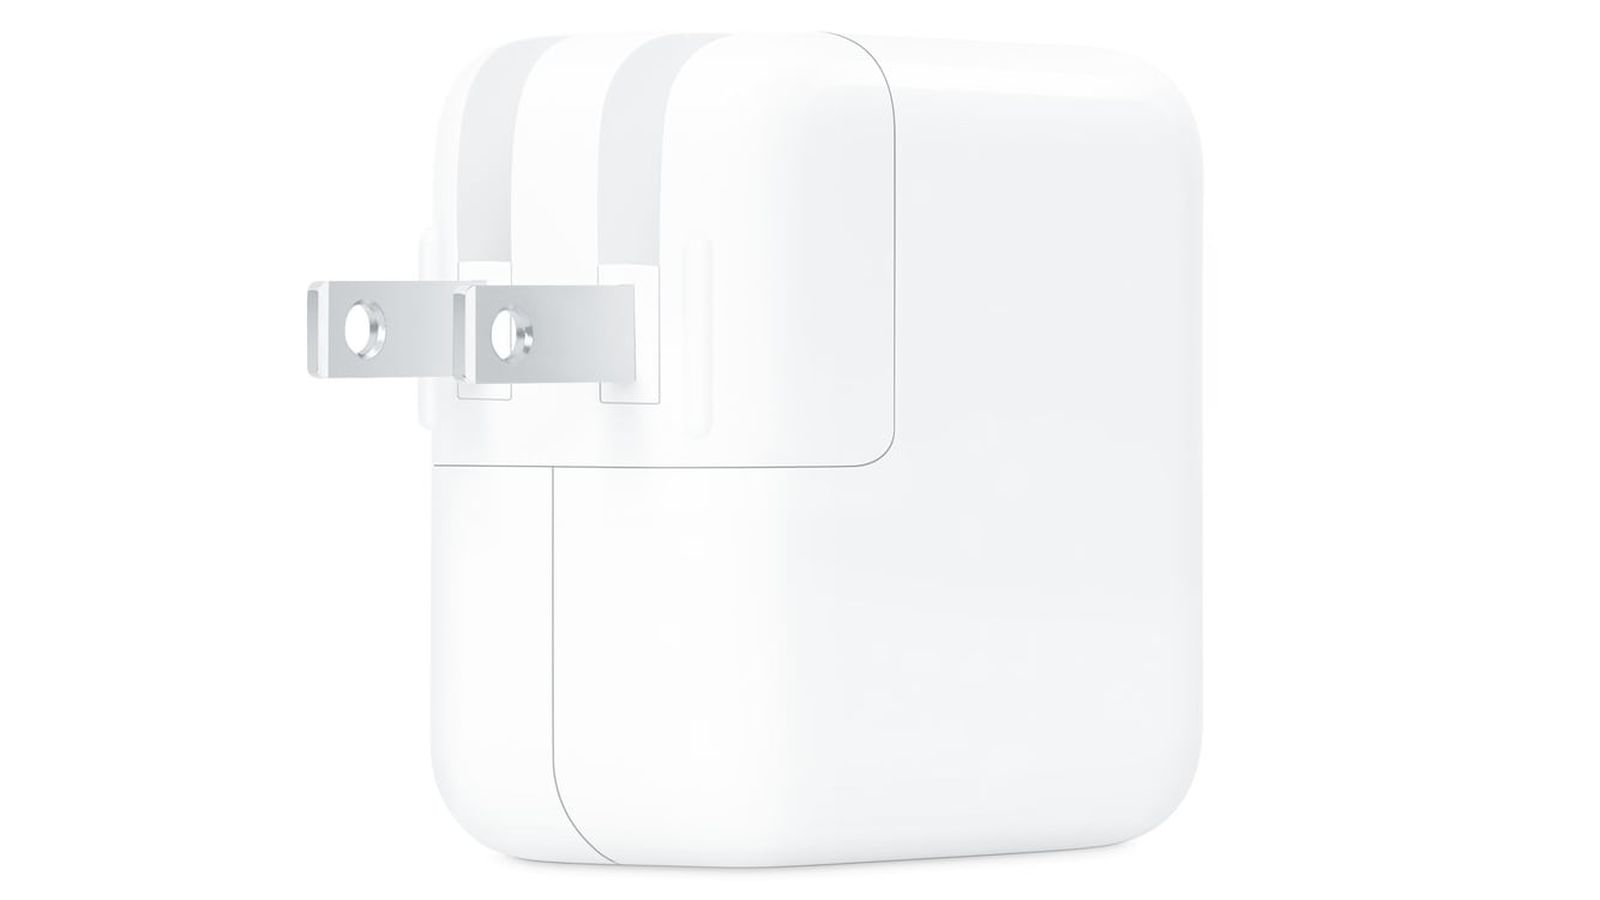 Carregador USB-C de porta dupla de 35W inédito vazado no Apple Document